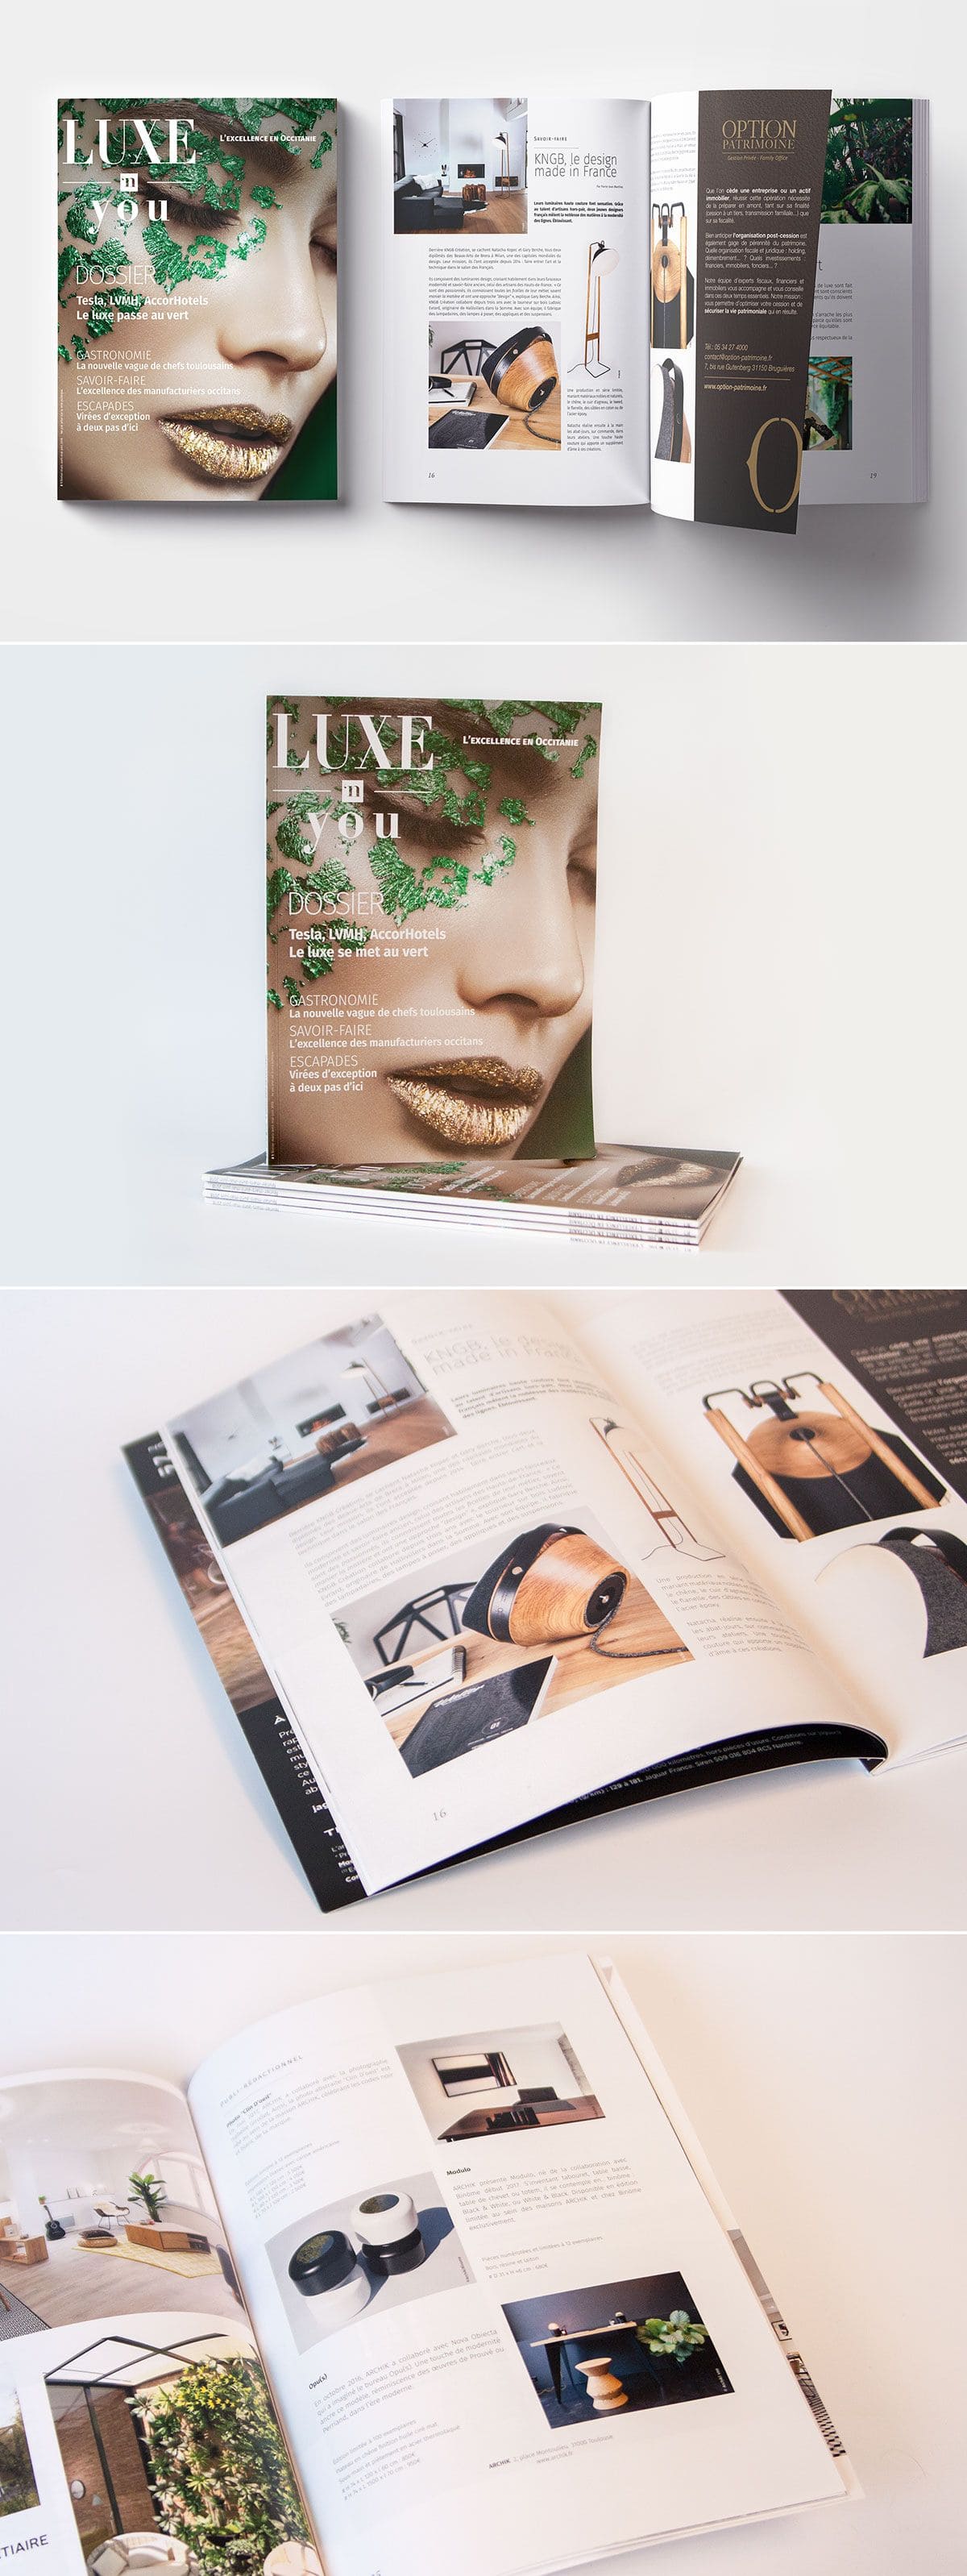 différentes vues du magazine Luxe'N You, avec la couverture et plusieurs doubles-pages intérieures